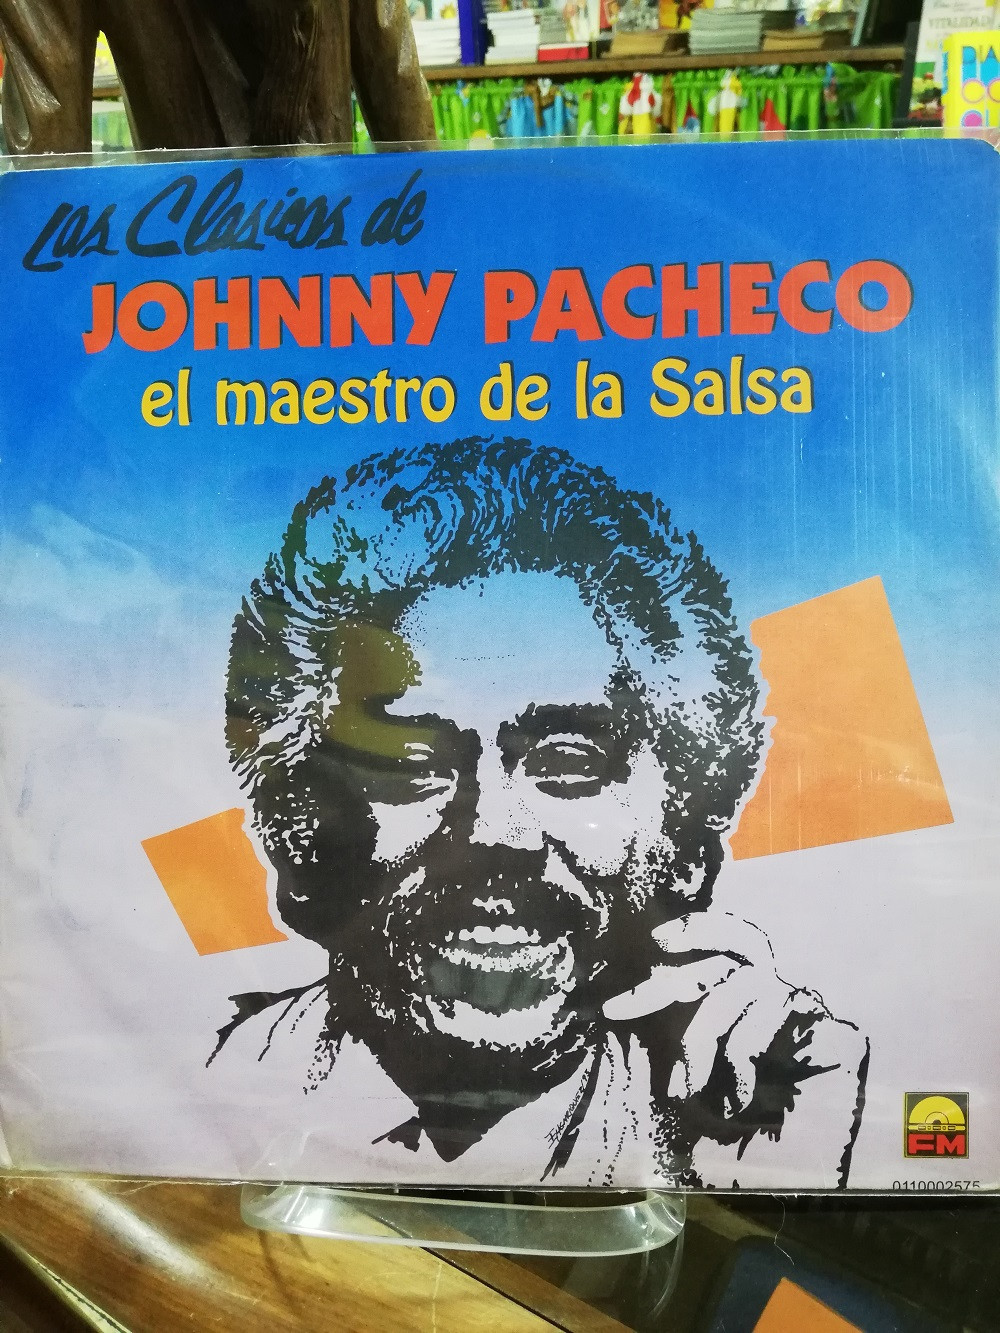 Imagen LP JOHNNY PACHECO - LAS CLÁSICAS JOHNNY PACHECO, EL MAESTRO DE LA SALSA